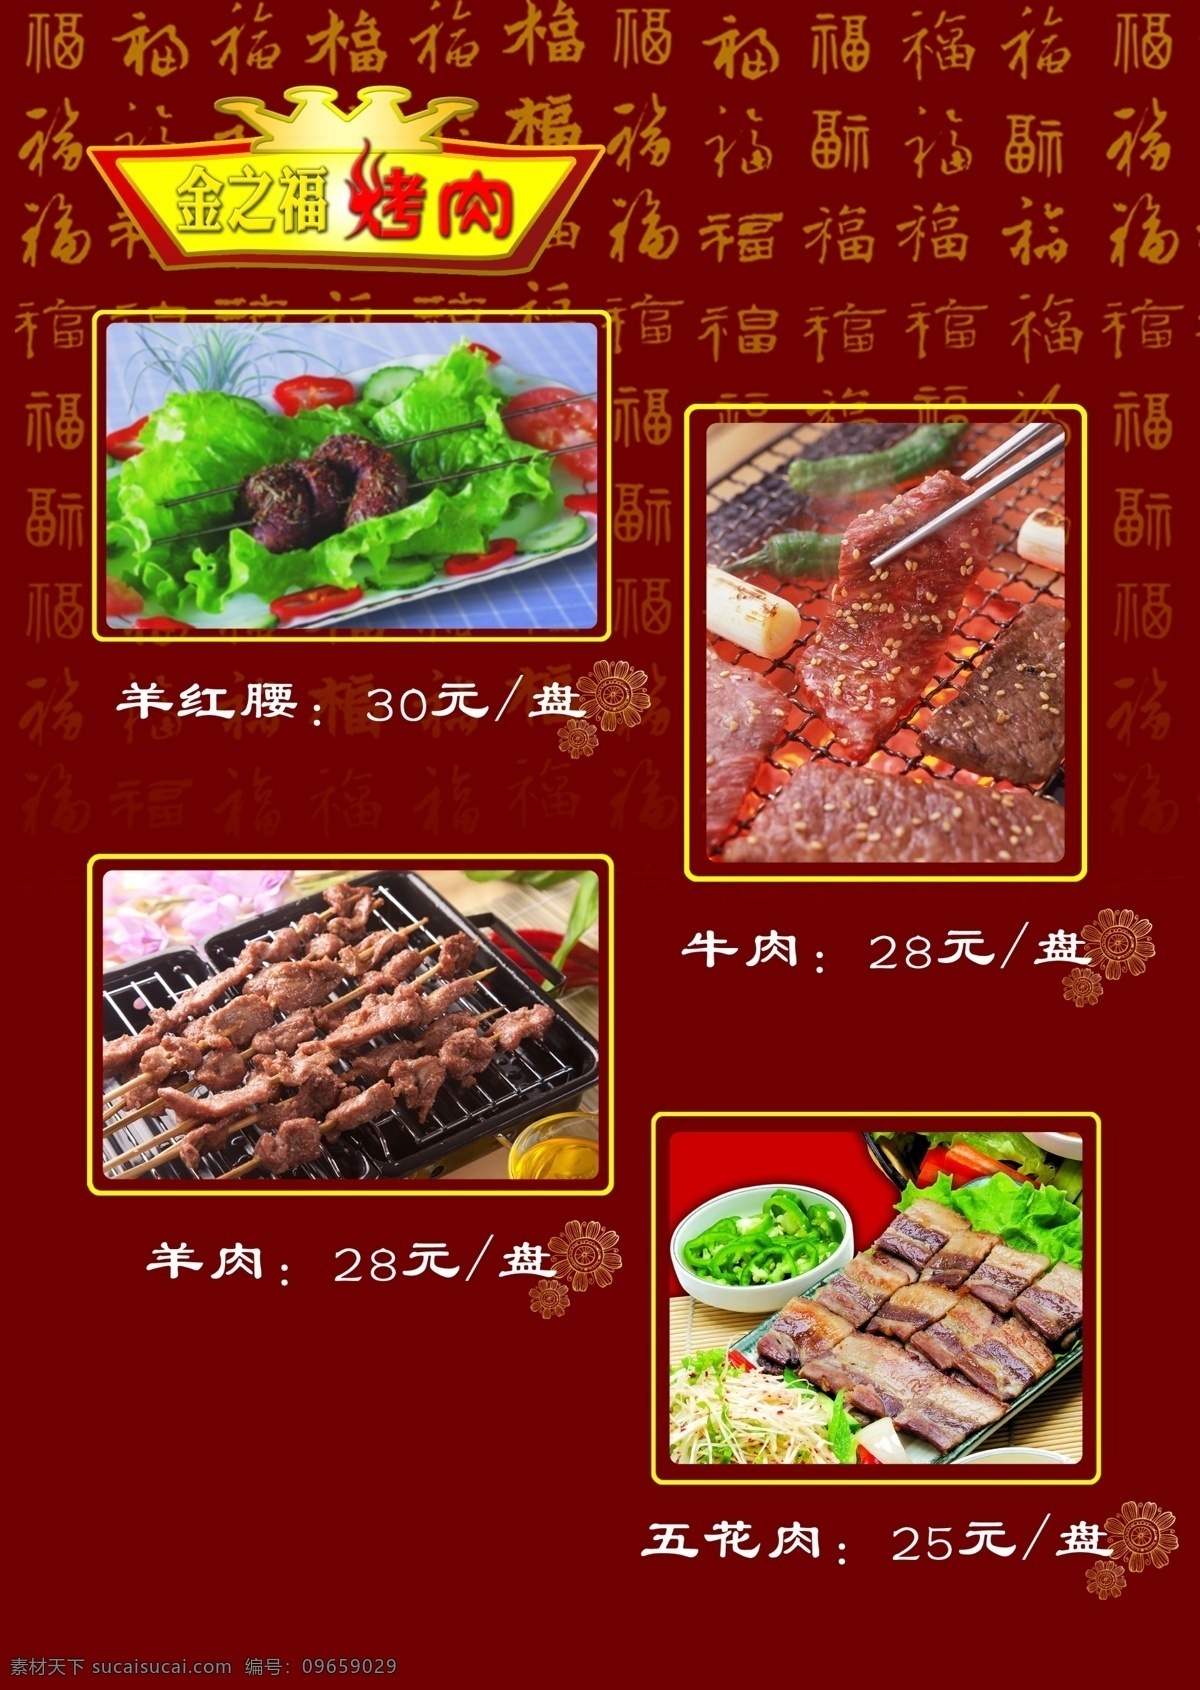 金 之福 烤肉 菜谱 菜单 单页 烤肉菜谱 psd源文件 餐饮素材